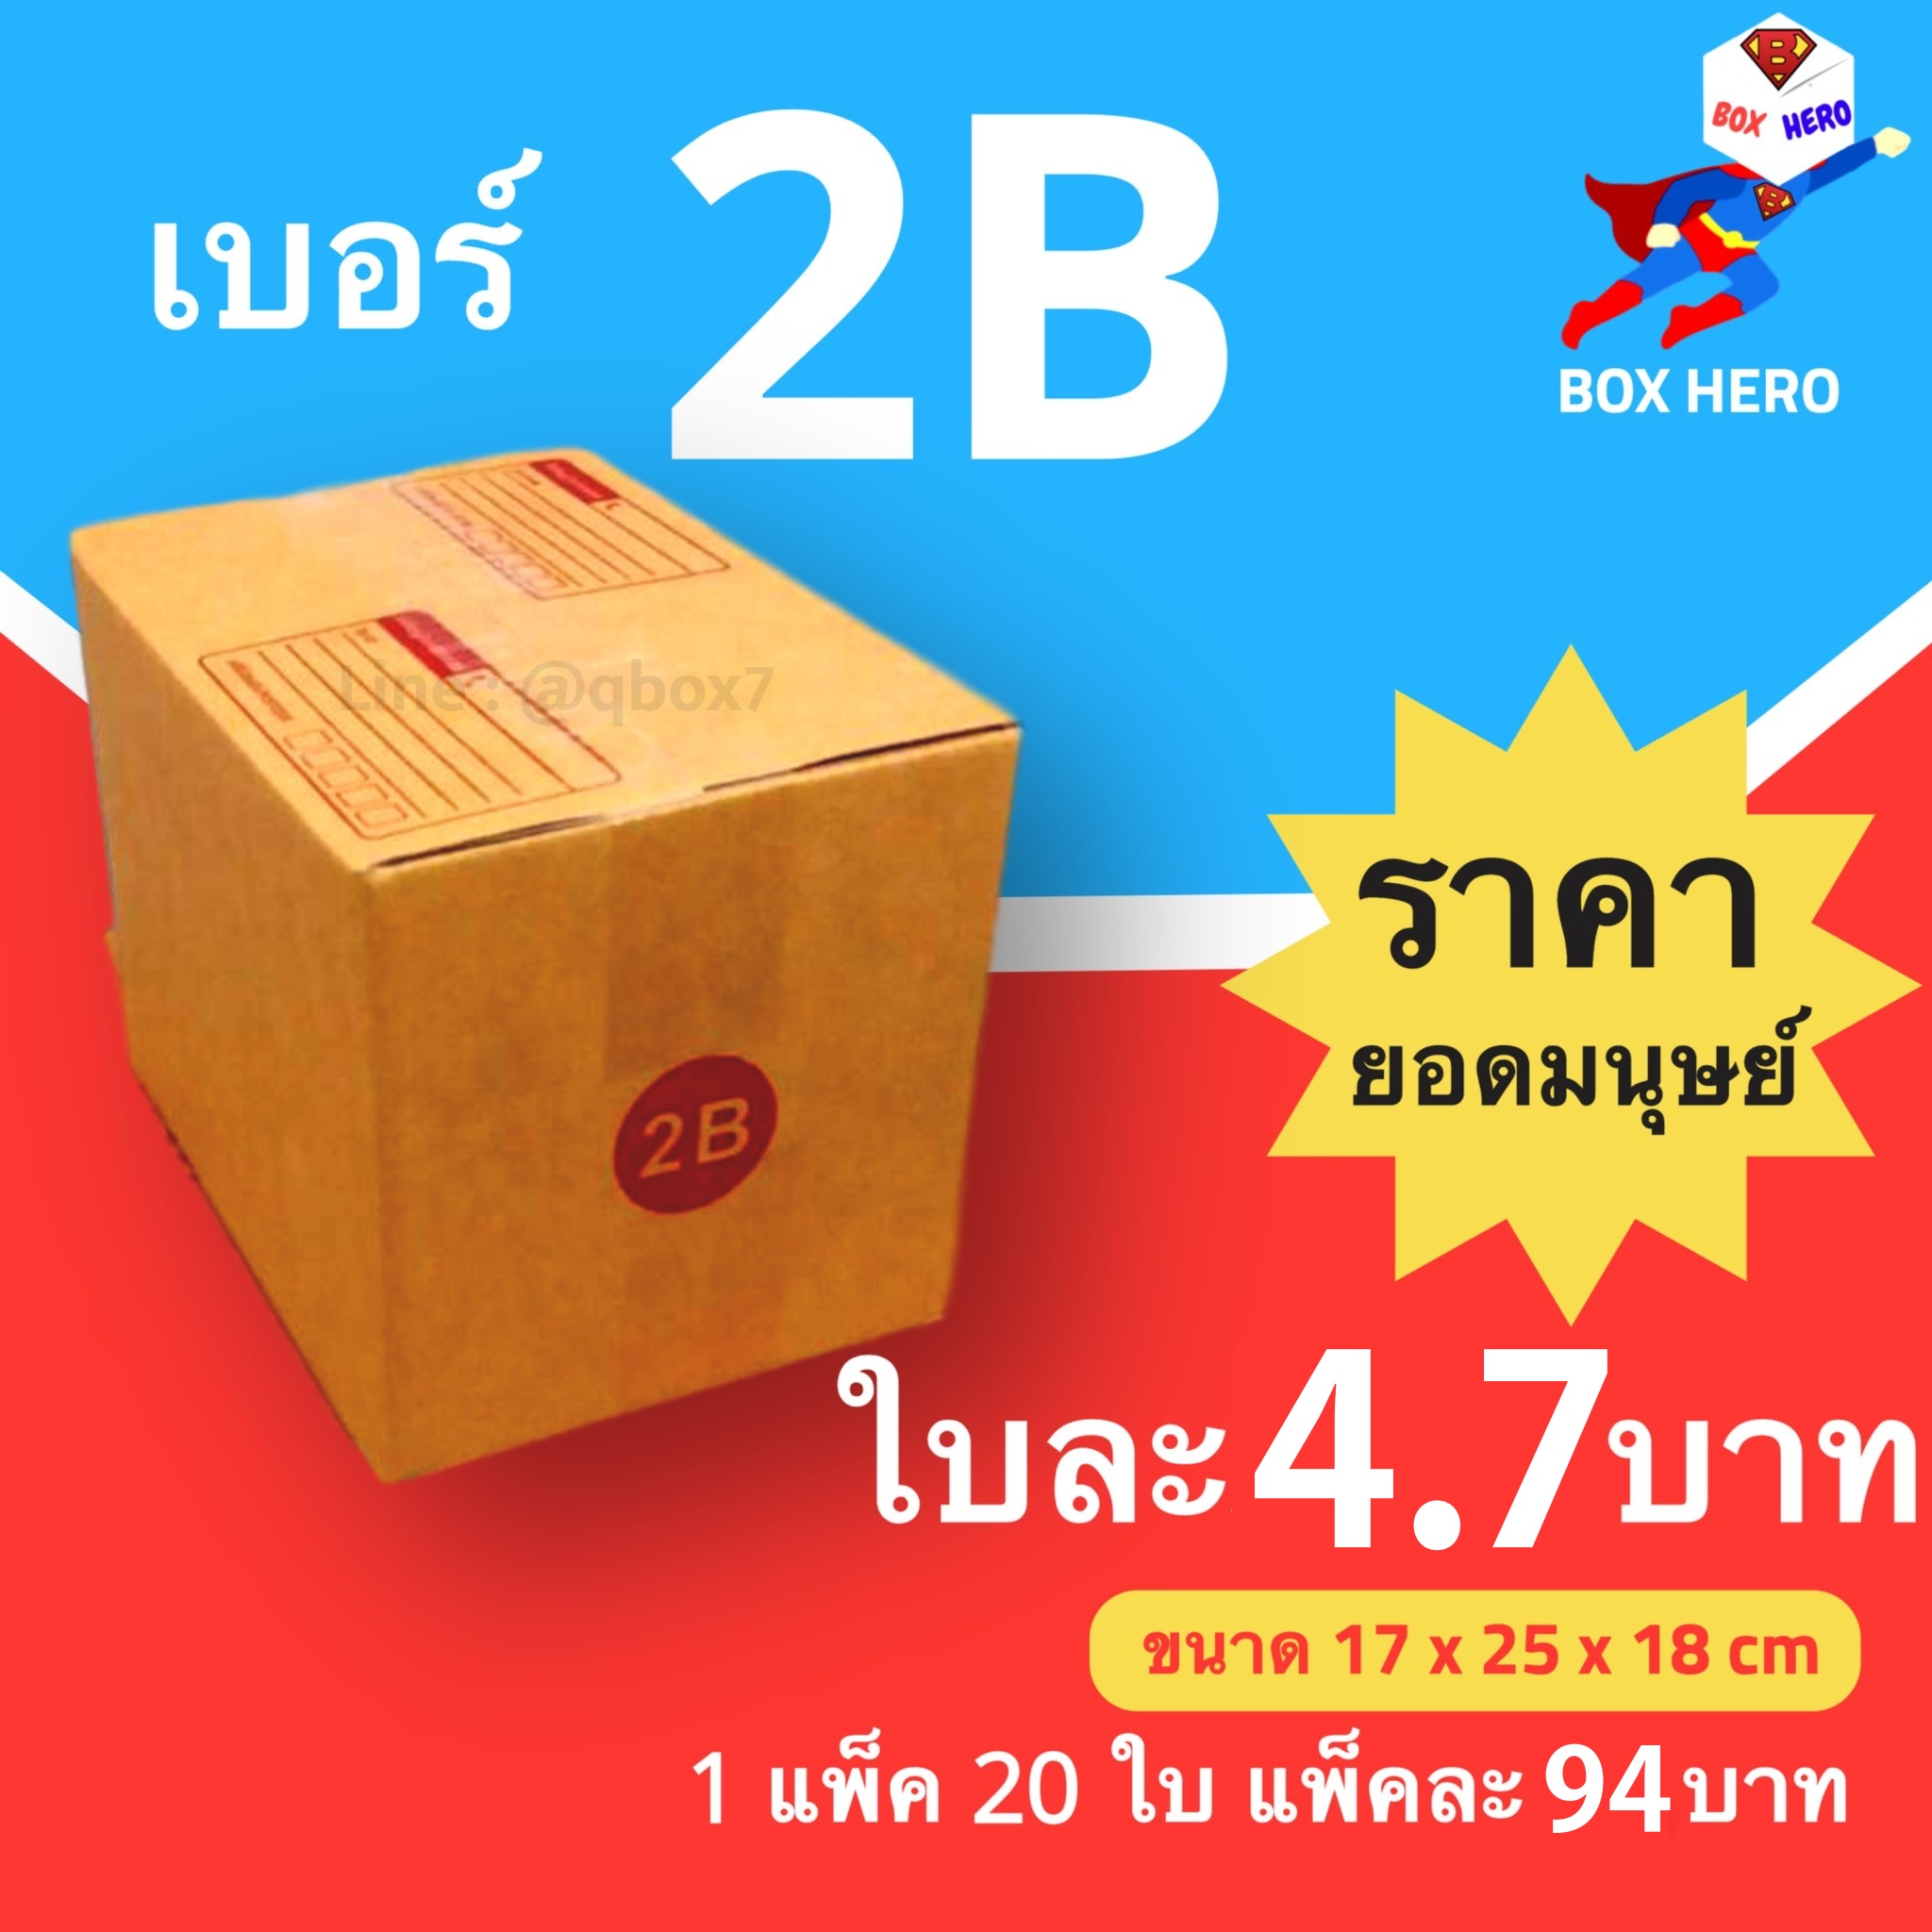 BoxHero กล่องไปรษณีย์เบอร์ 2B มีพิมพ์จ่าหน้า กล่องพัสดุ (20 ใบ 94 บาท)